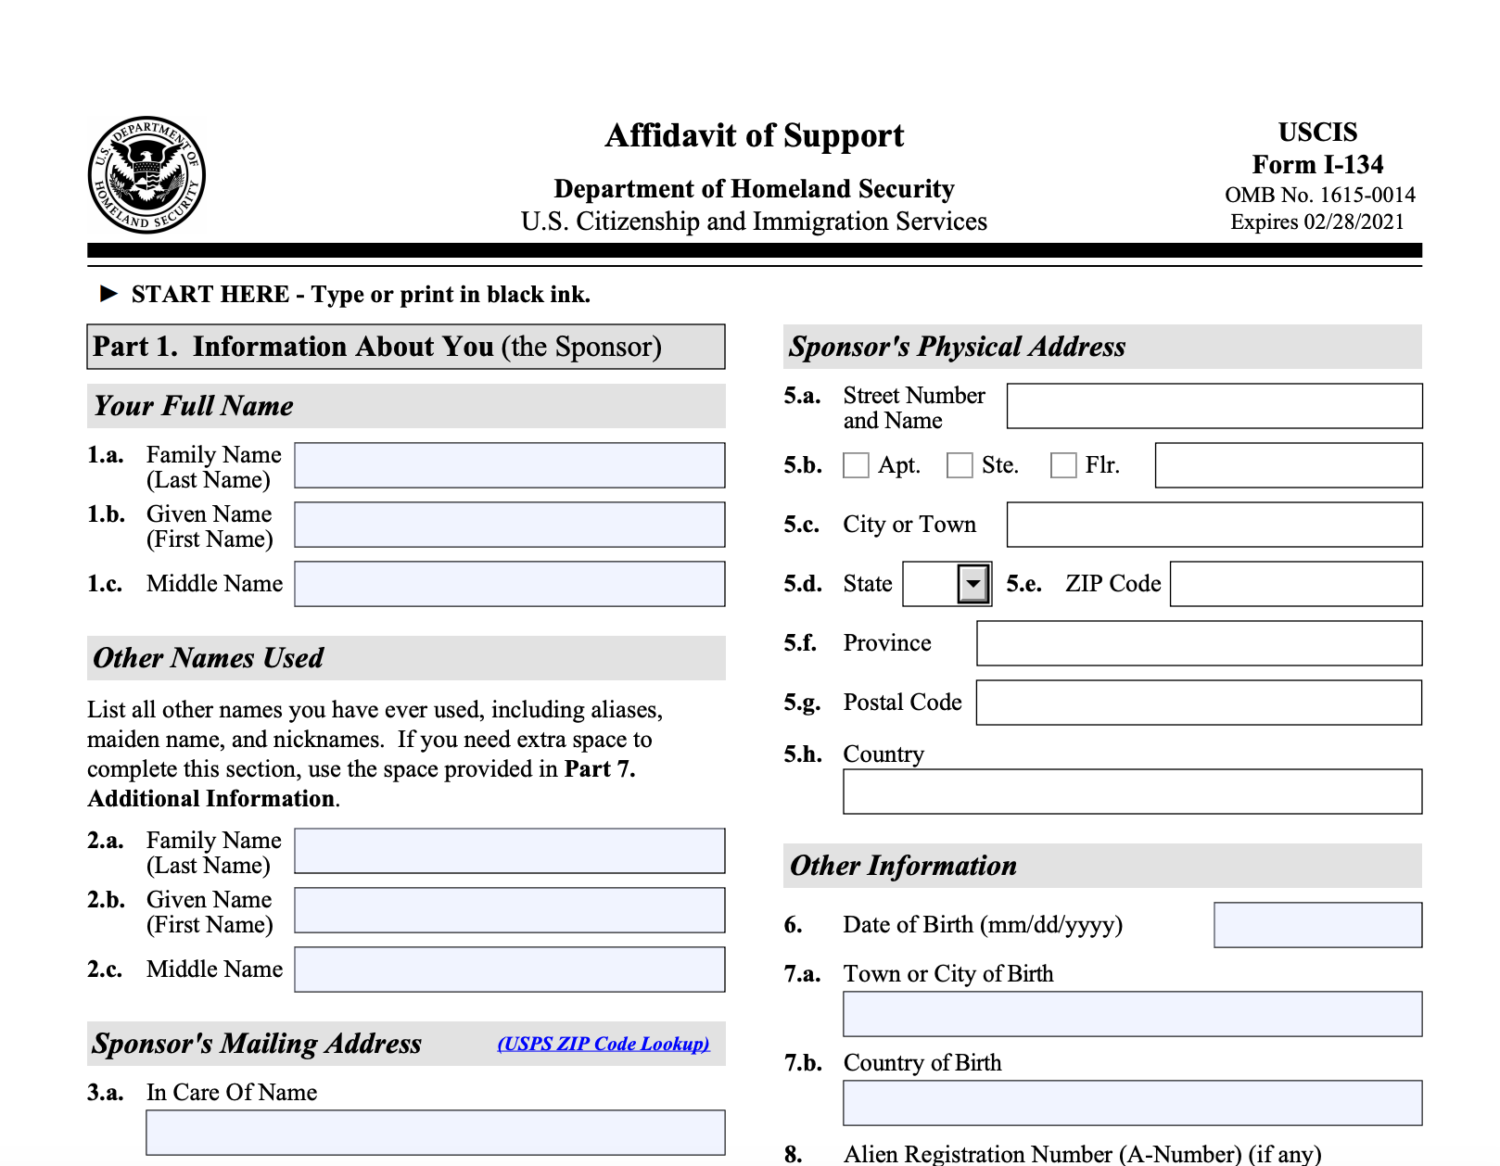 Form I-134 Affidavit of Support